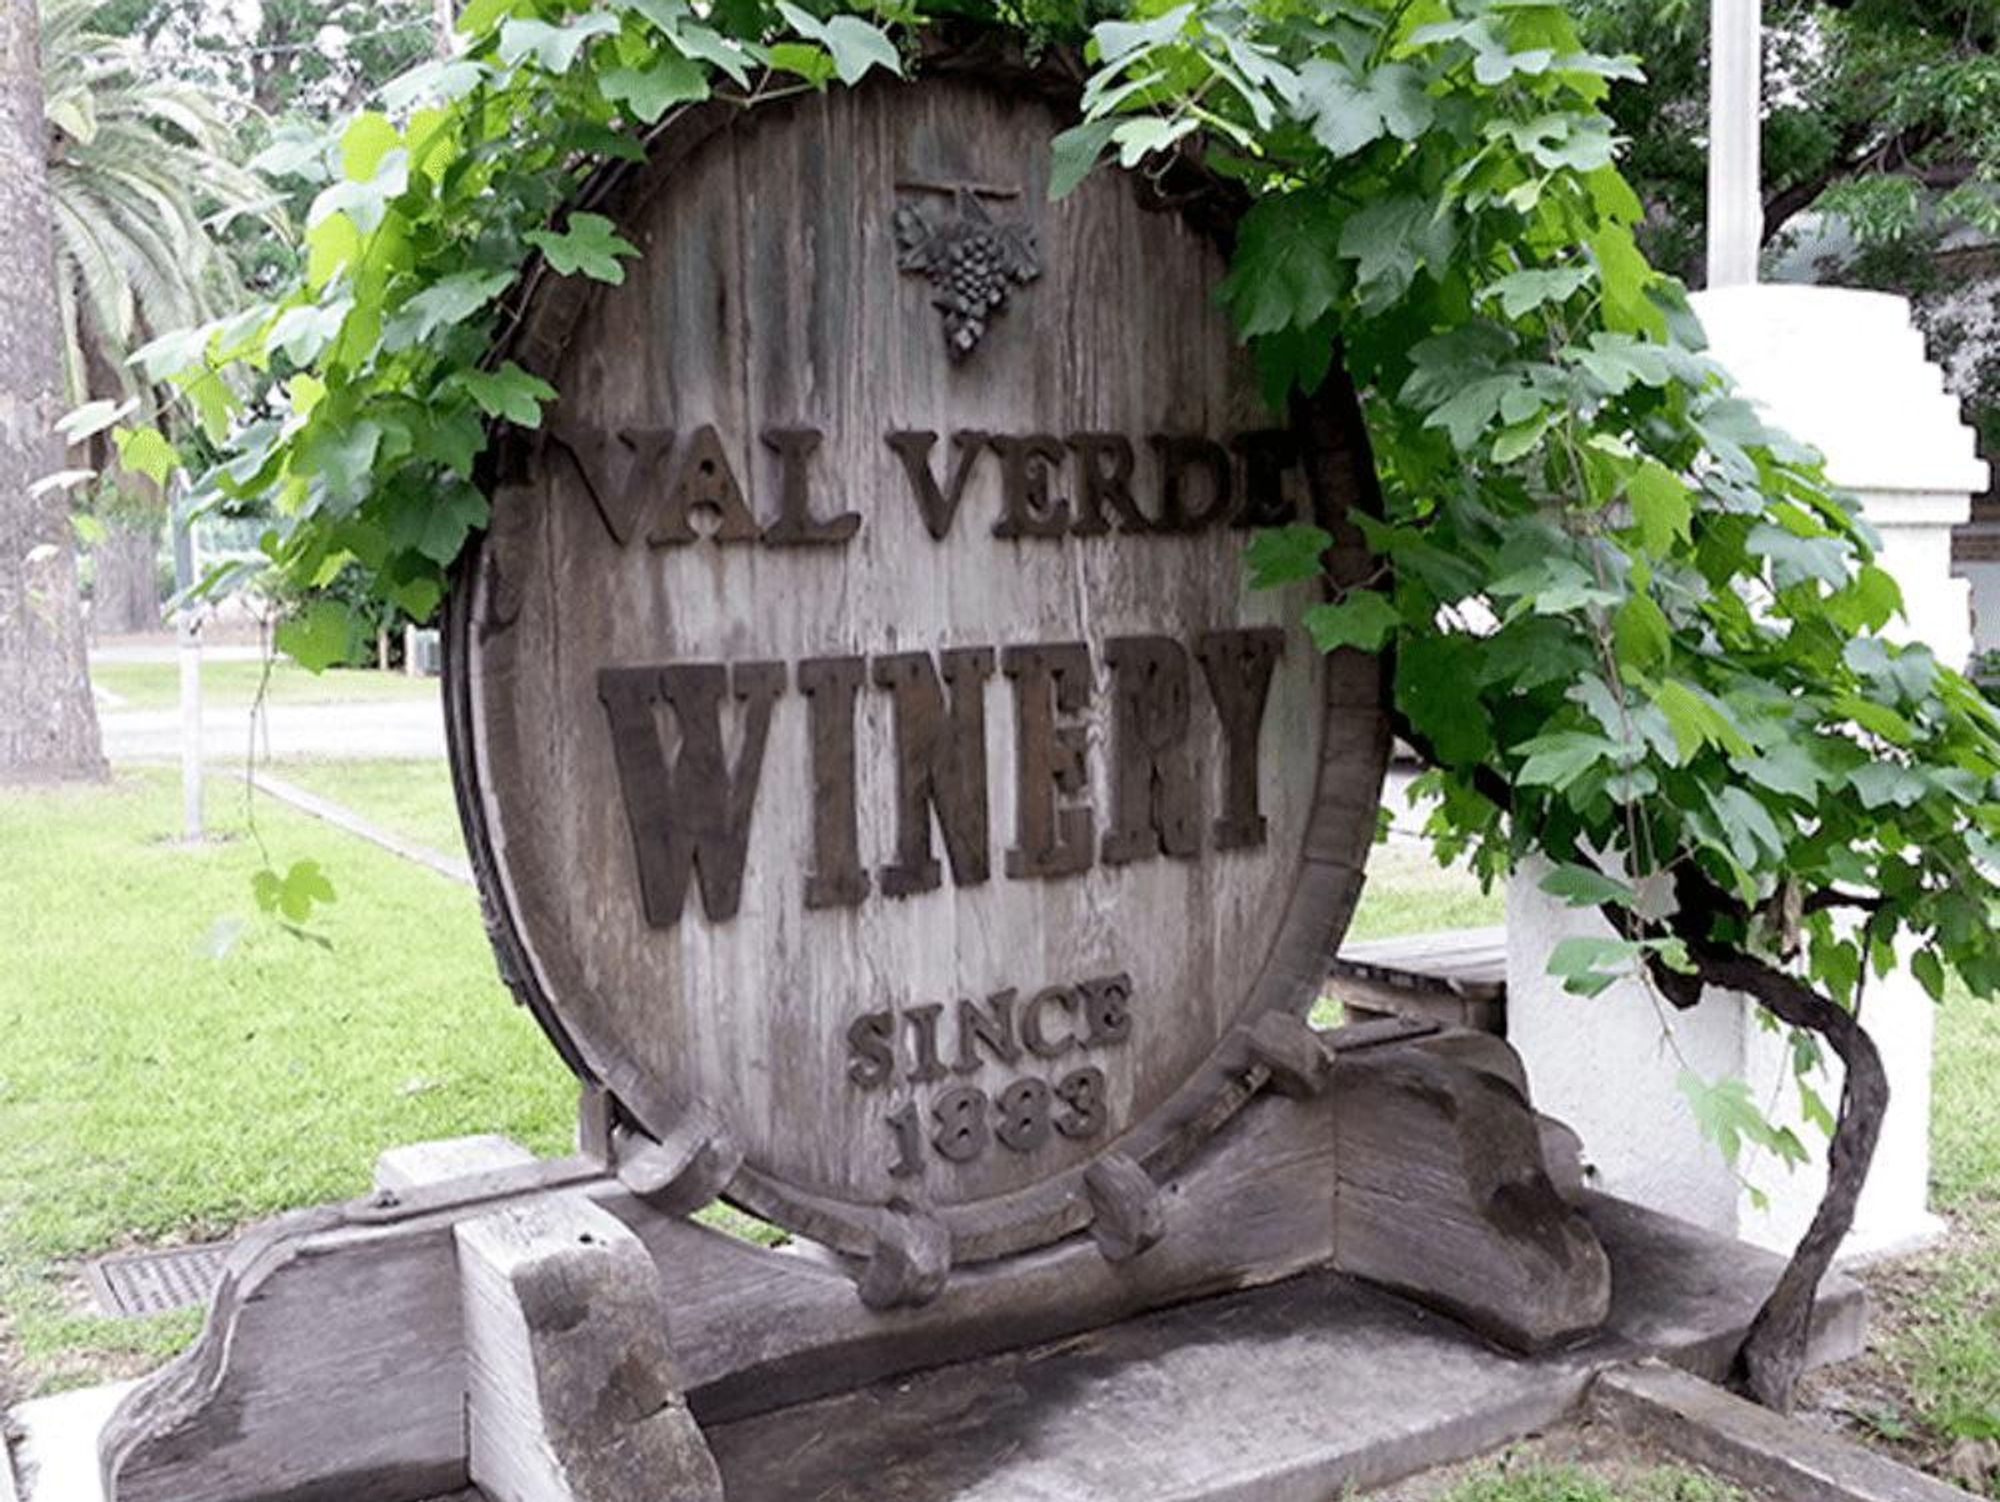 val verde winery